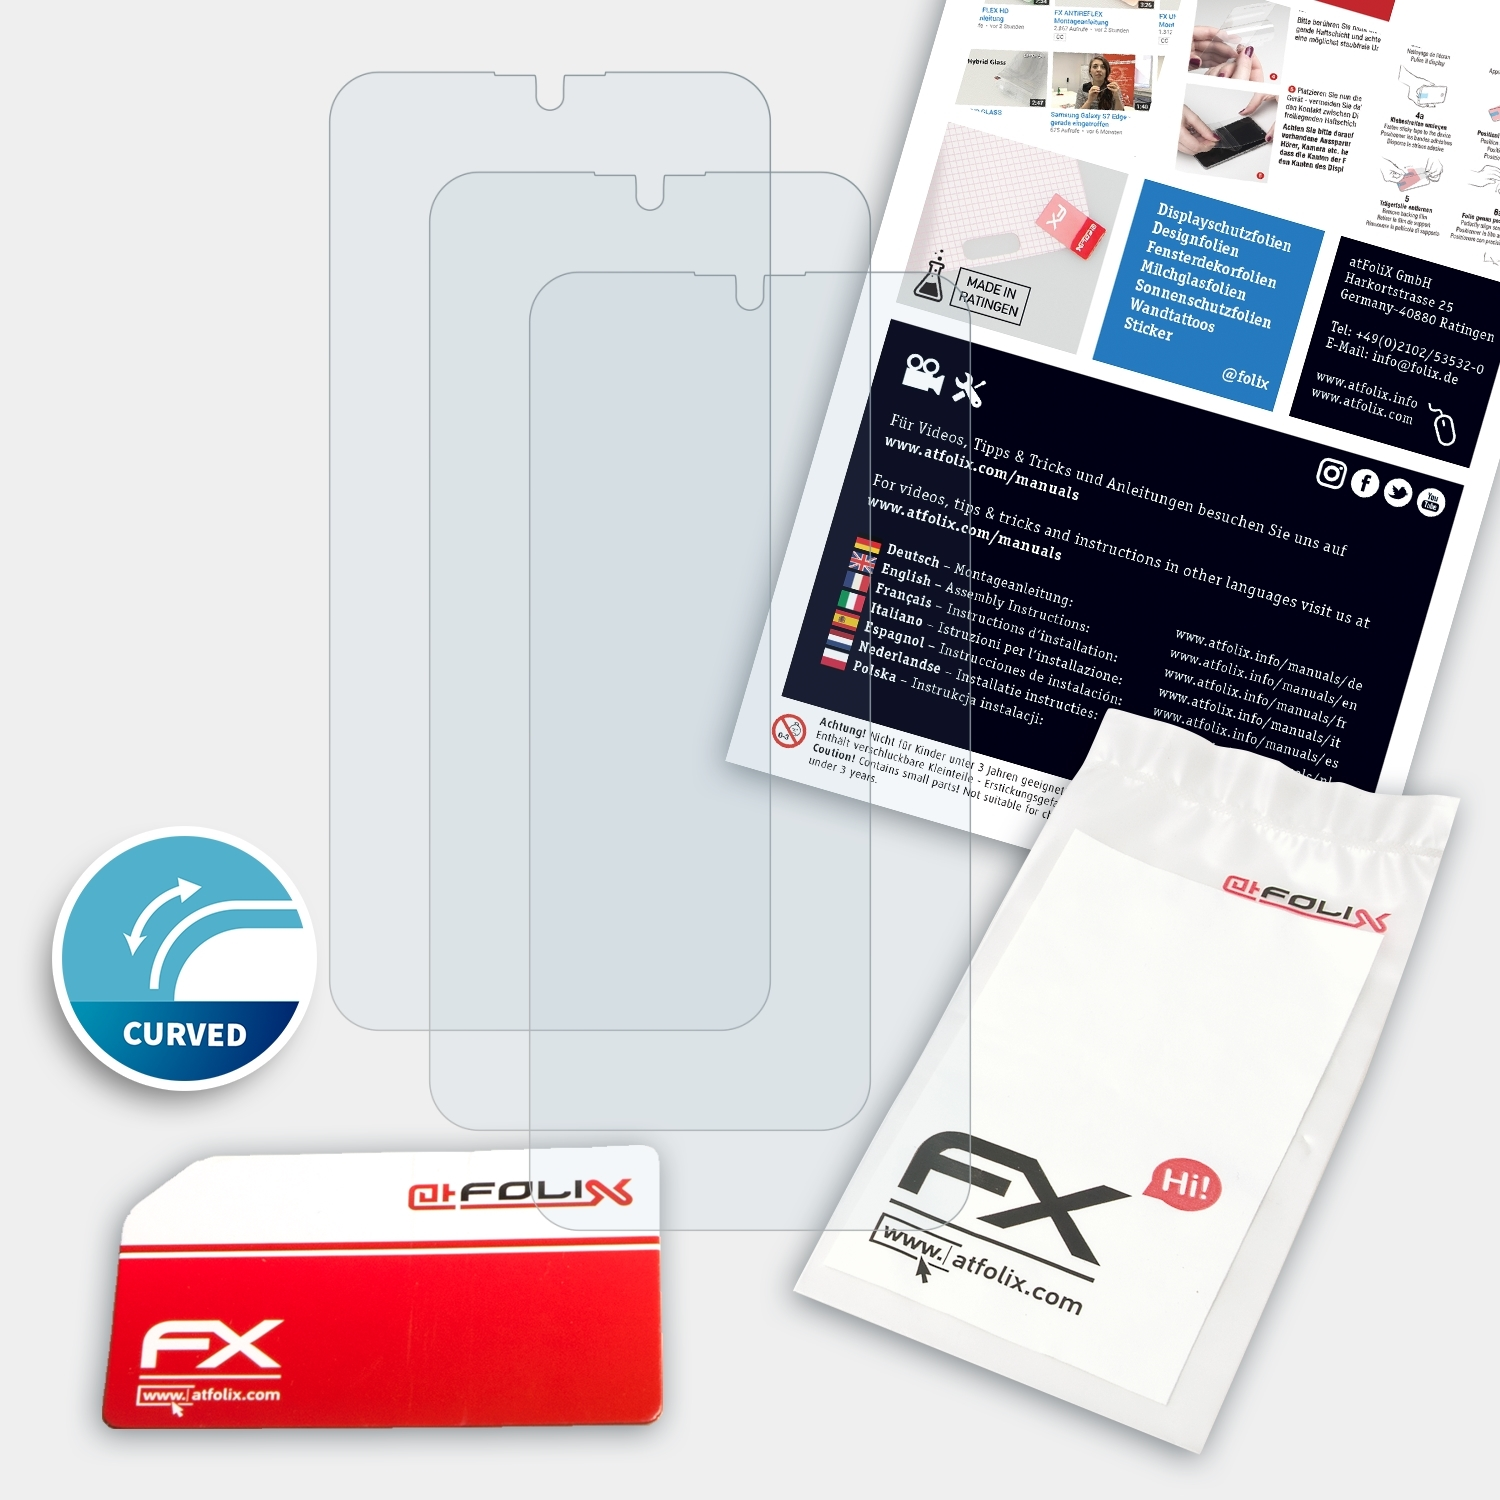 Displayschutz(für FX-ActiFleX 3x ATFOLIX Vivo Y12)